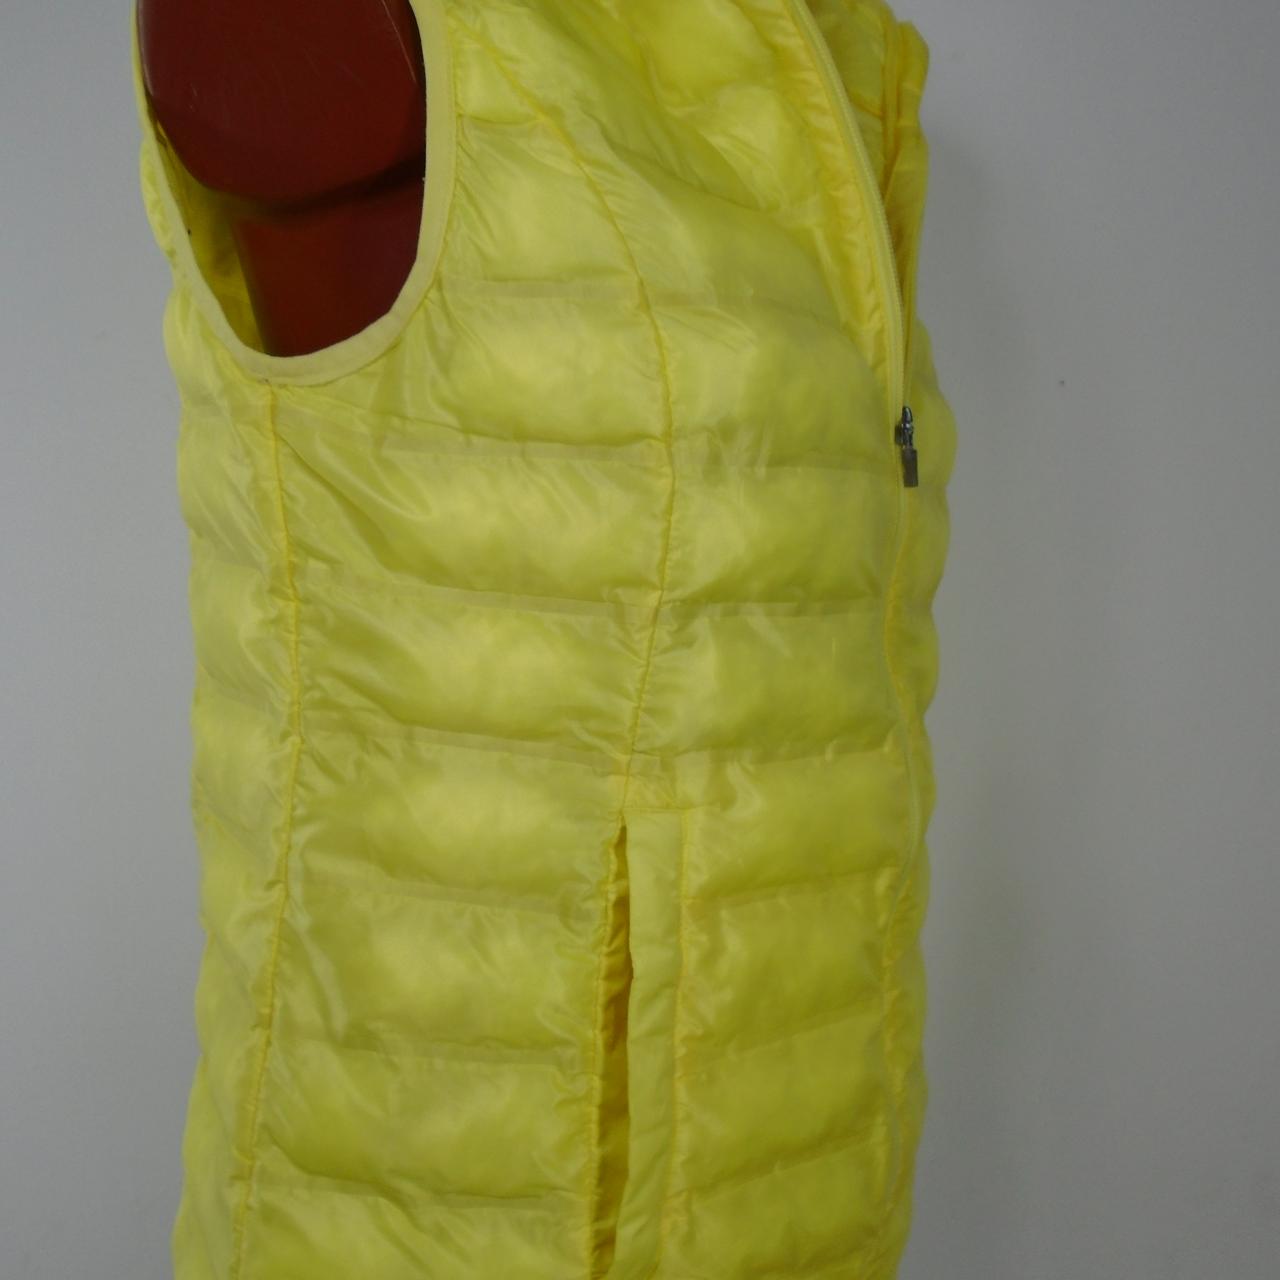 Women's Vest Italy Moda. Yellow. L. Used. Good